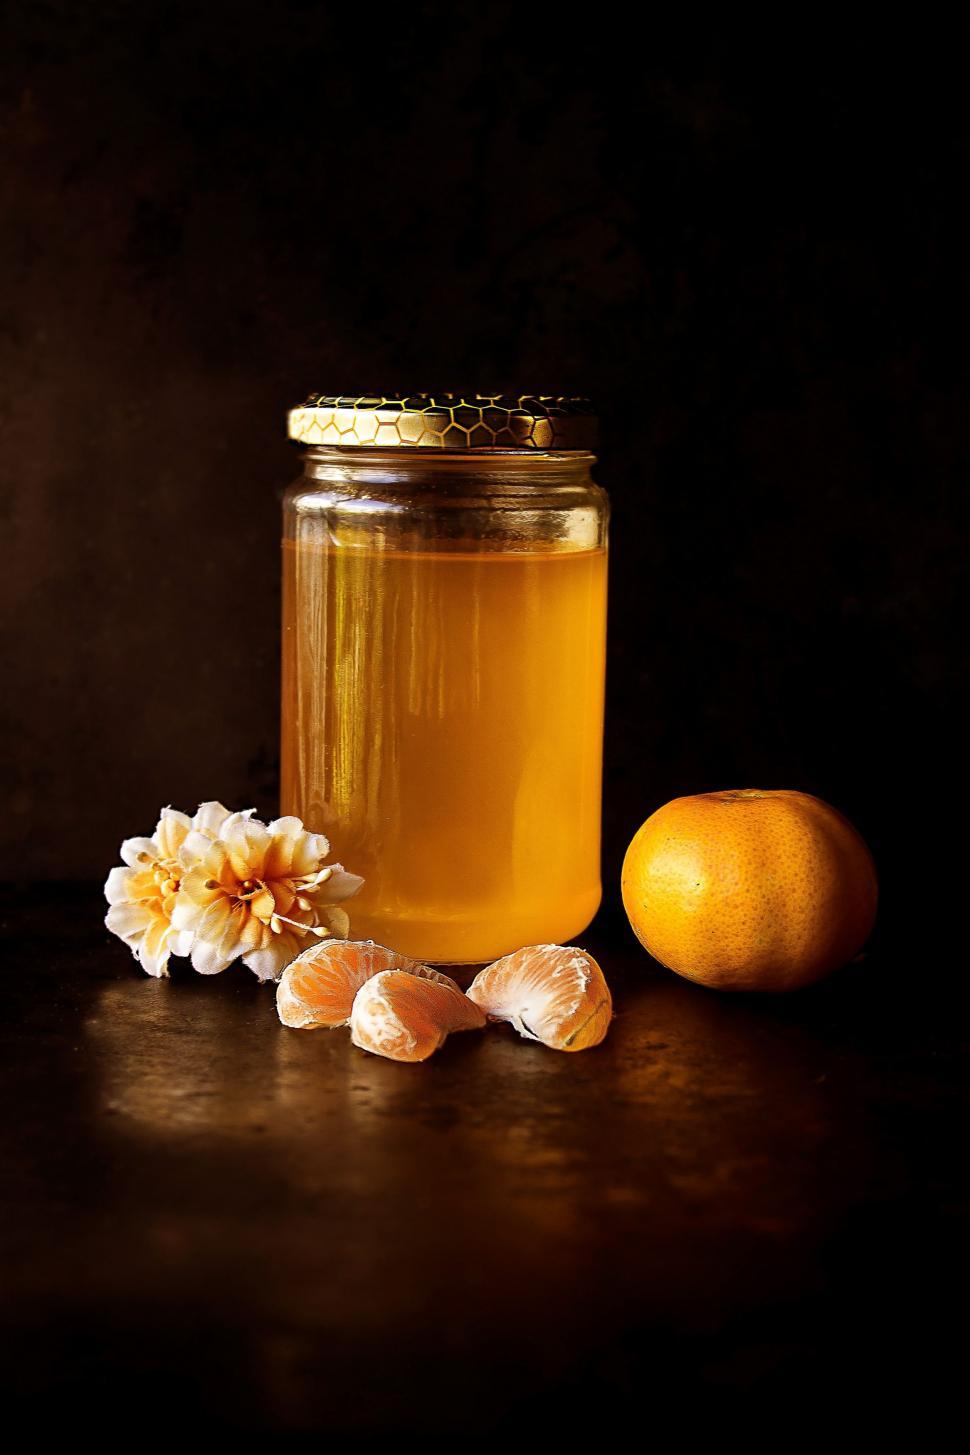 Free Image of Honey and Orange  